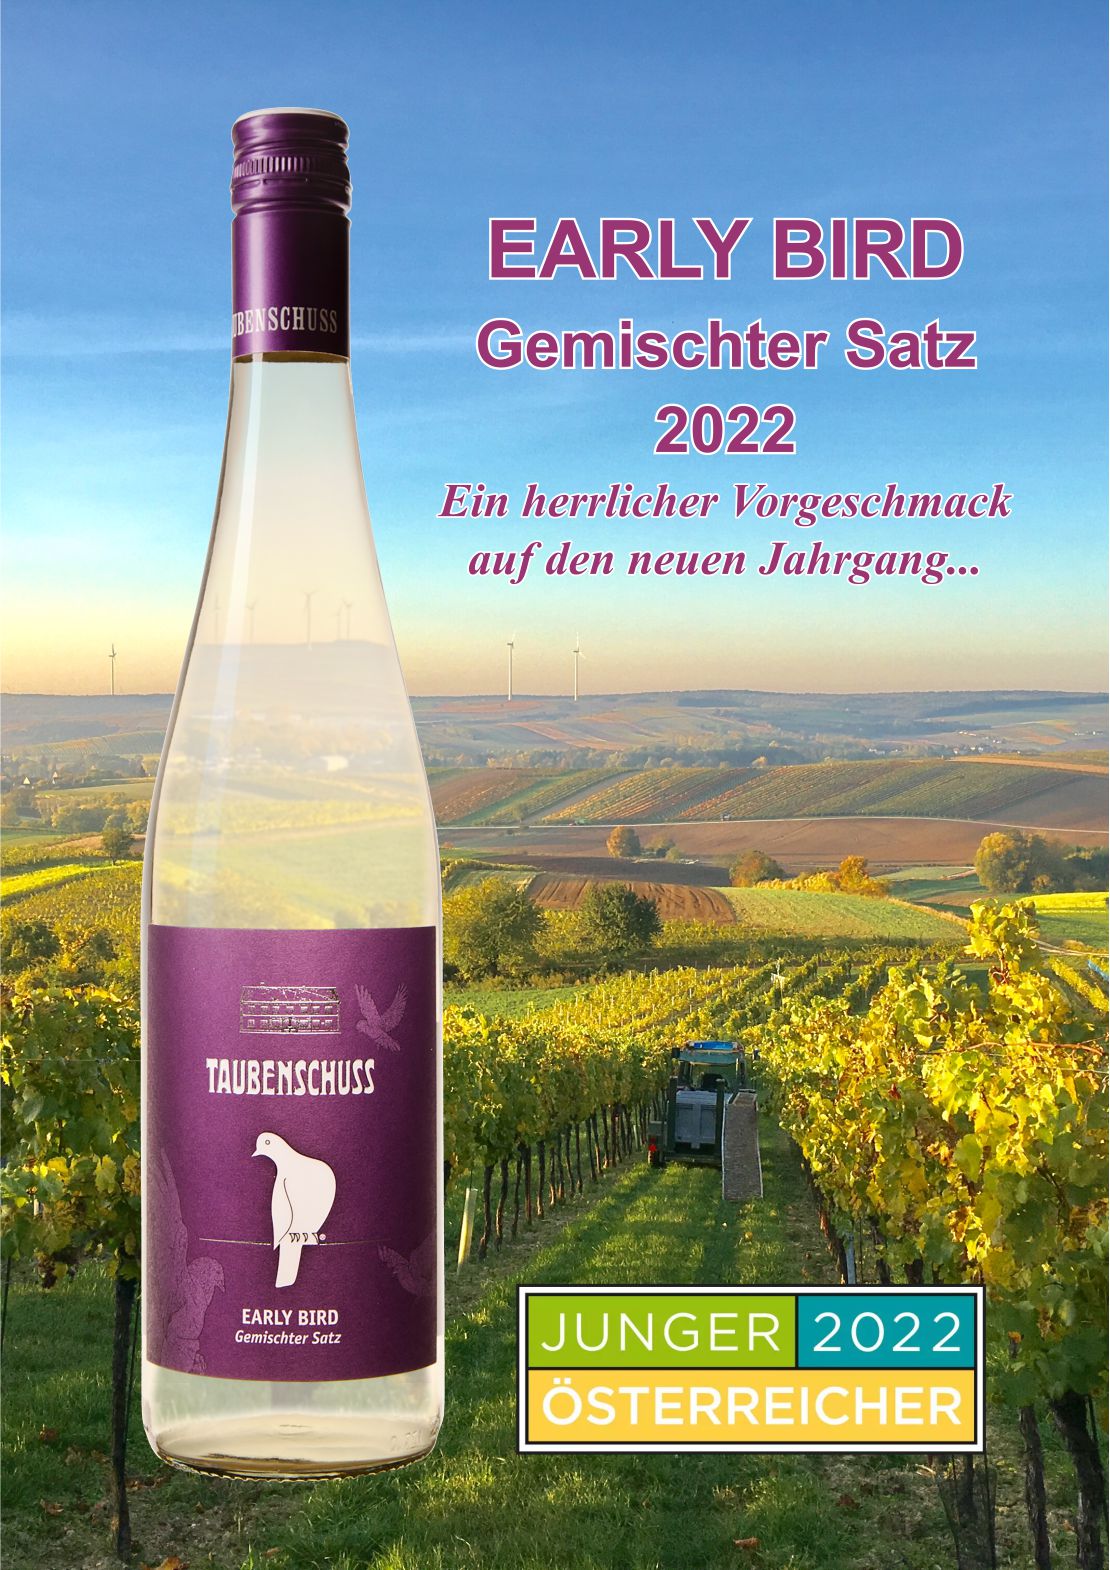 EARLY BIRD Gemischter Satz 2022 out now!!! • Weingut Taubenschuss